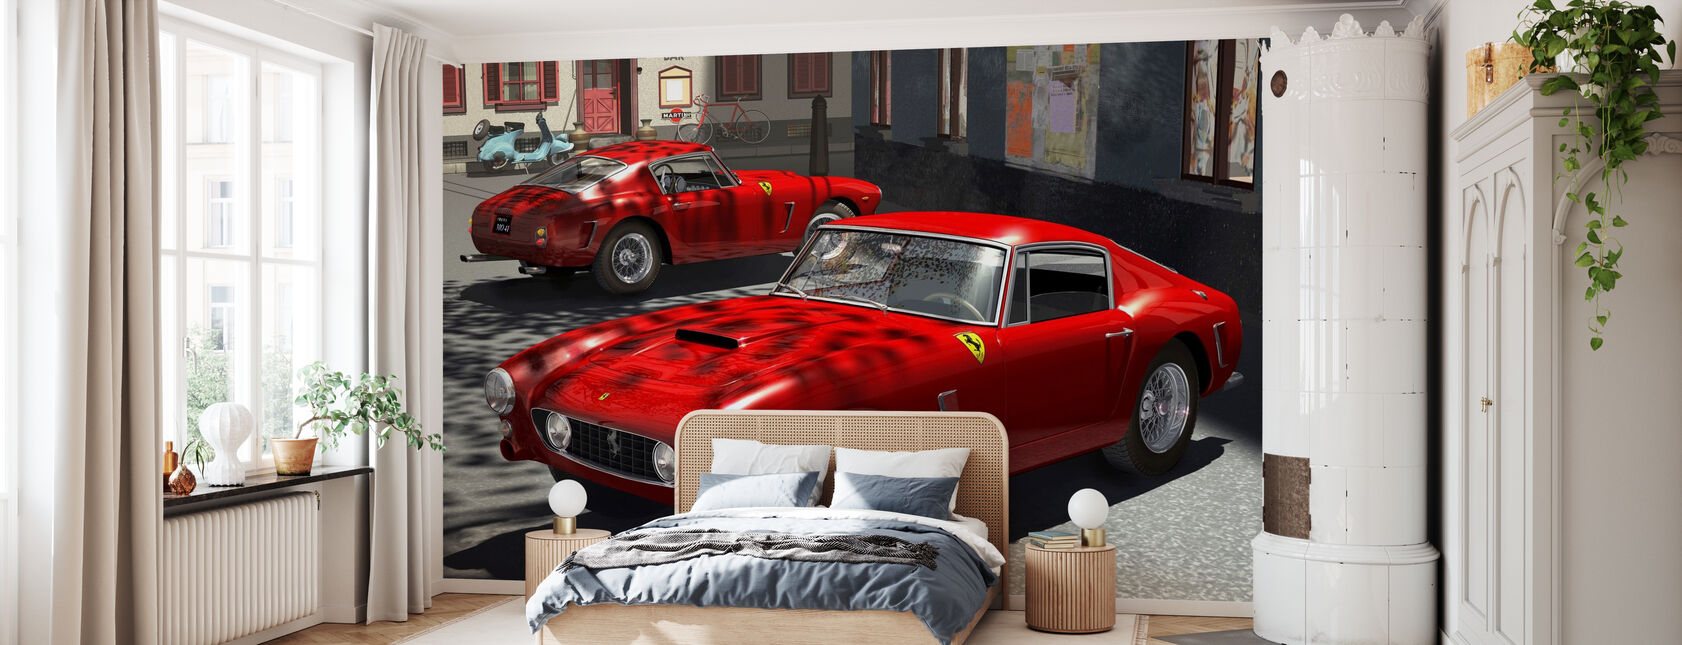 Classic Sports Car - Wallpaper - Bedroom